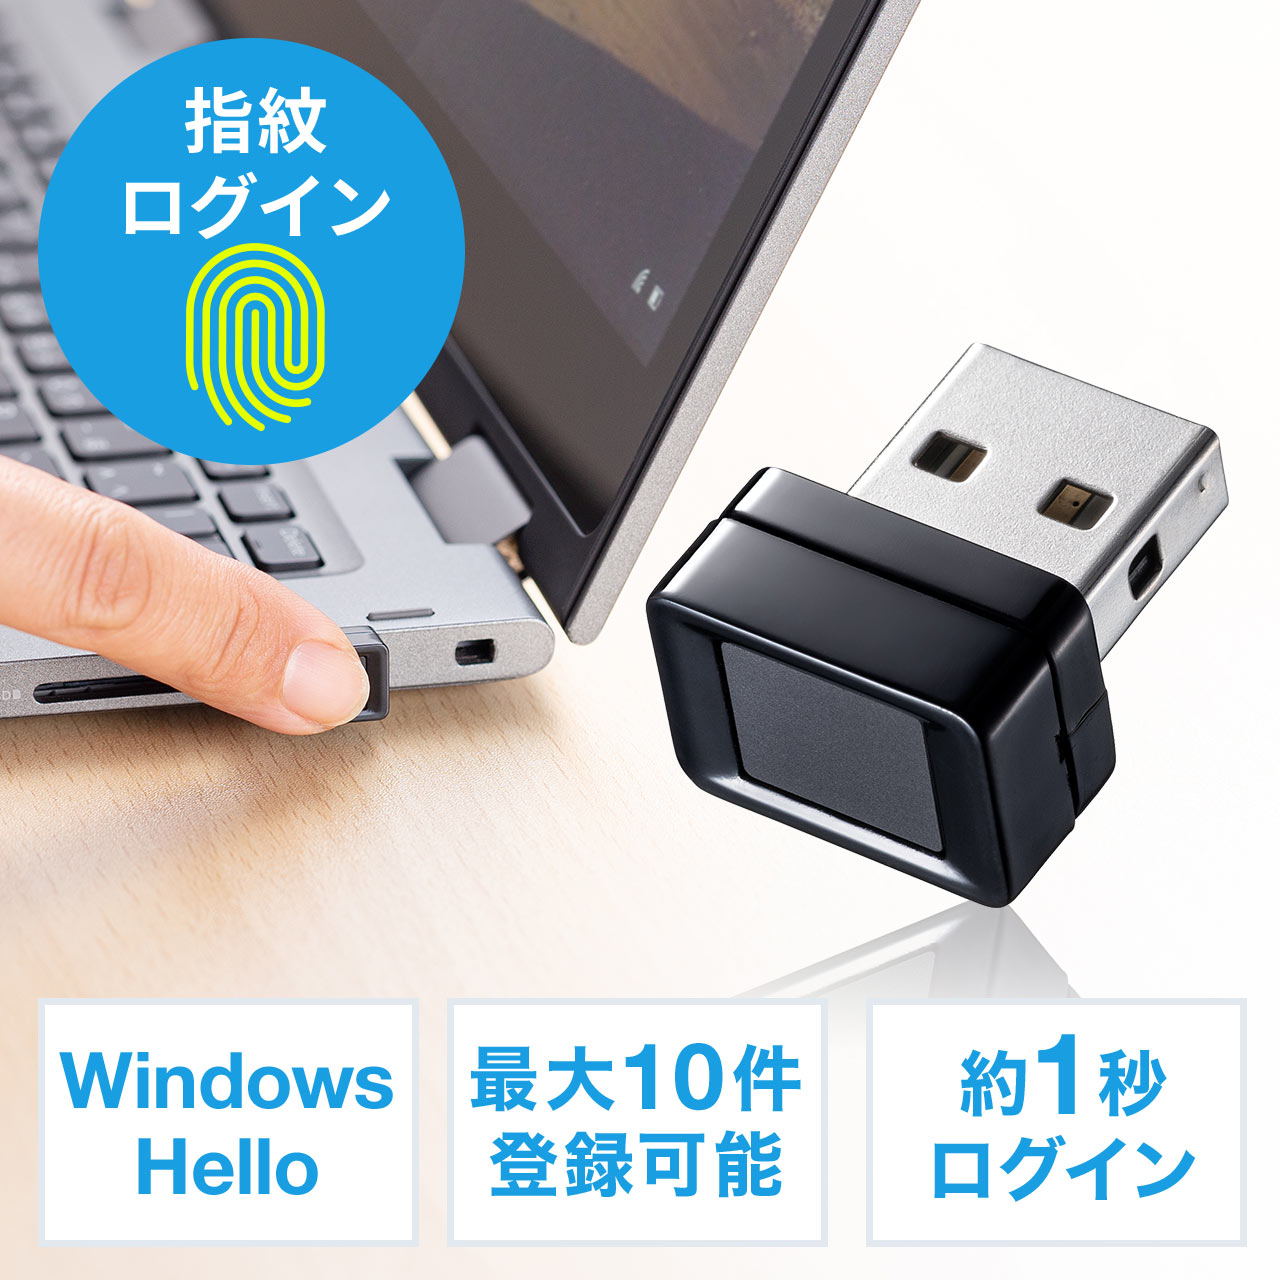 【オフィスアイテムセール】指紋認証リーダー PC用 USB接続 Windows Hello Windows10対応 指紋最大10件登録  400-FPRD1